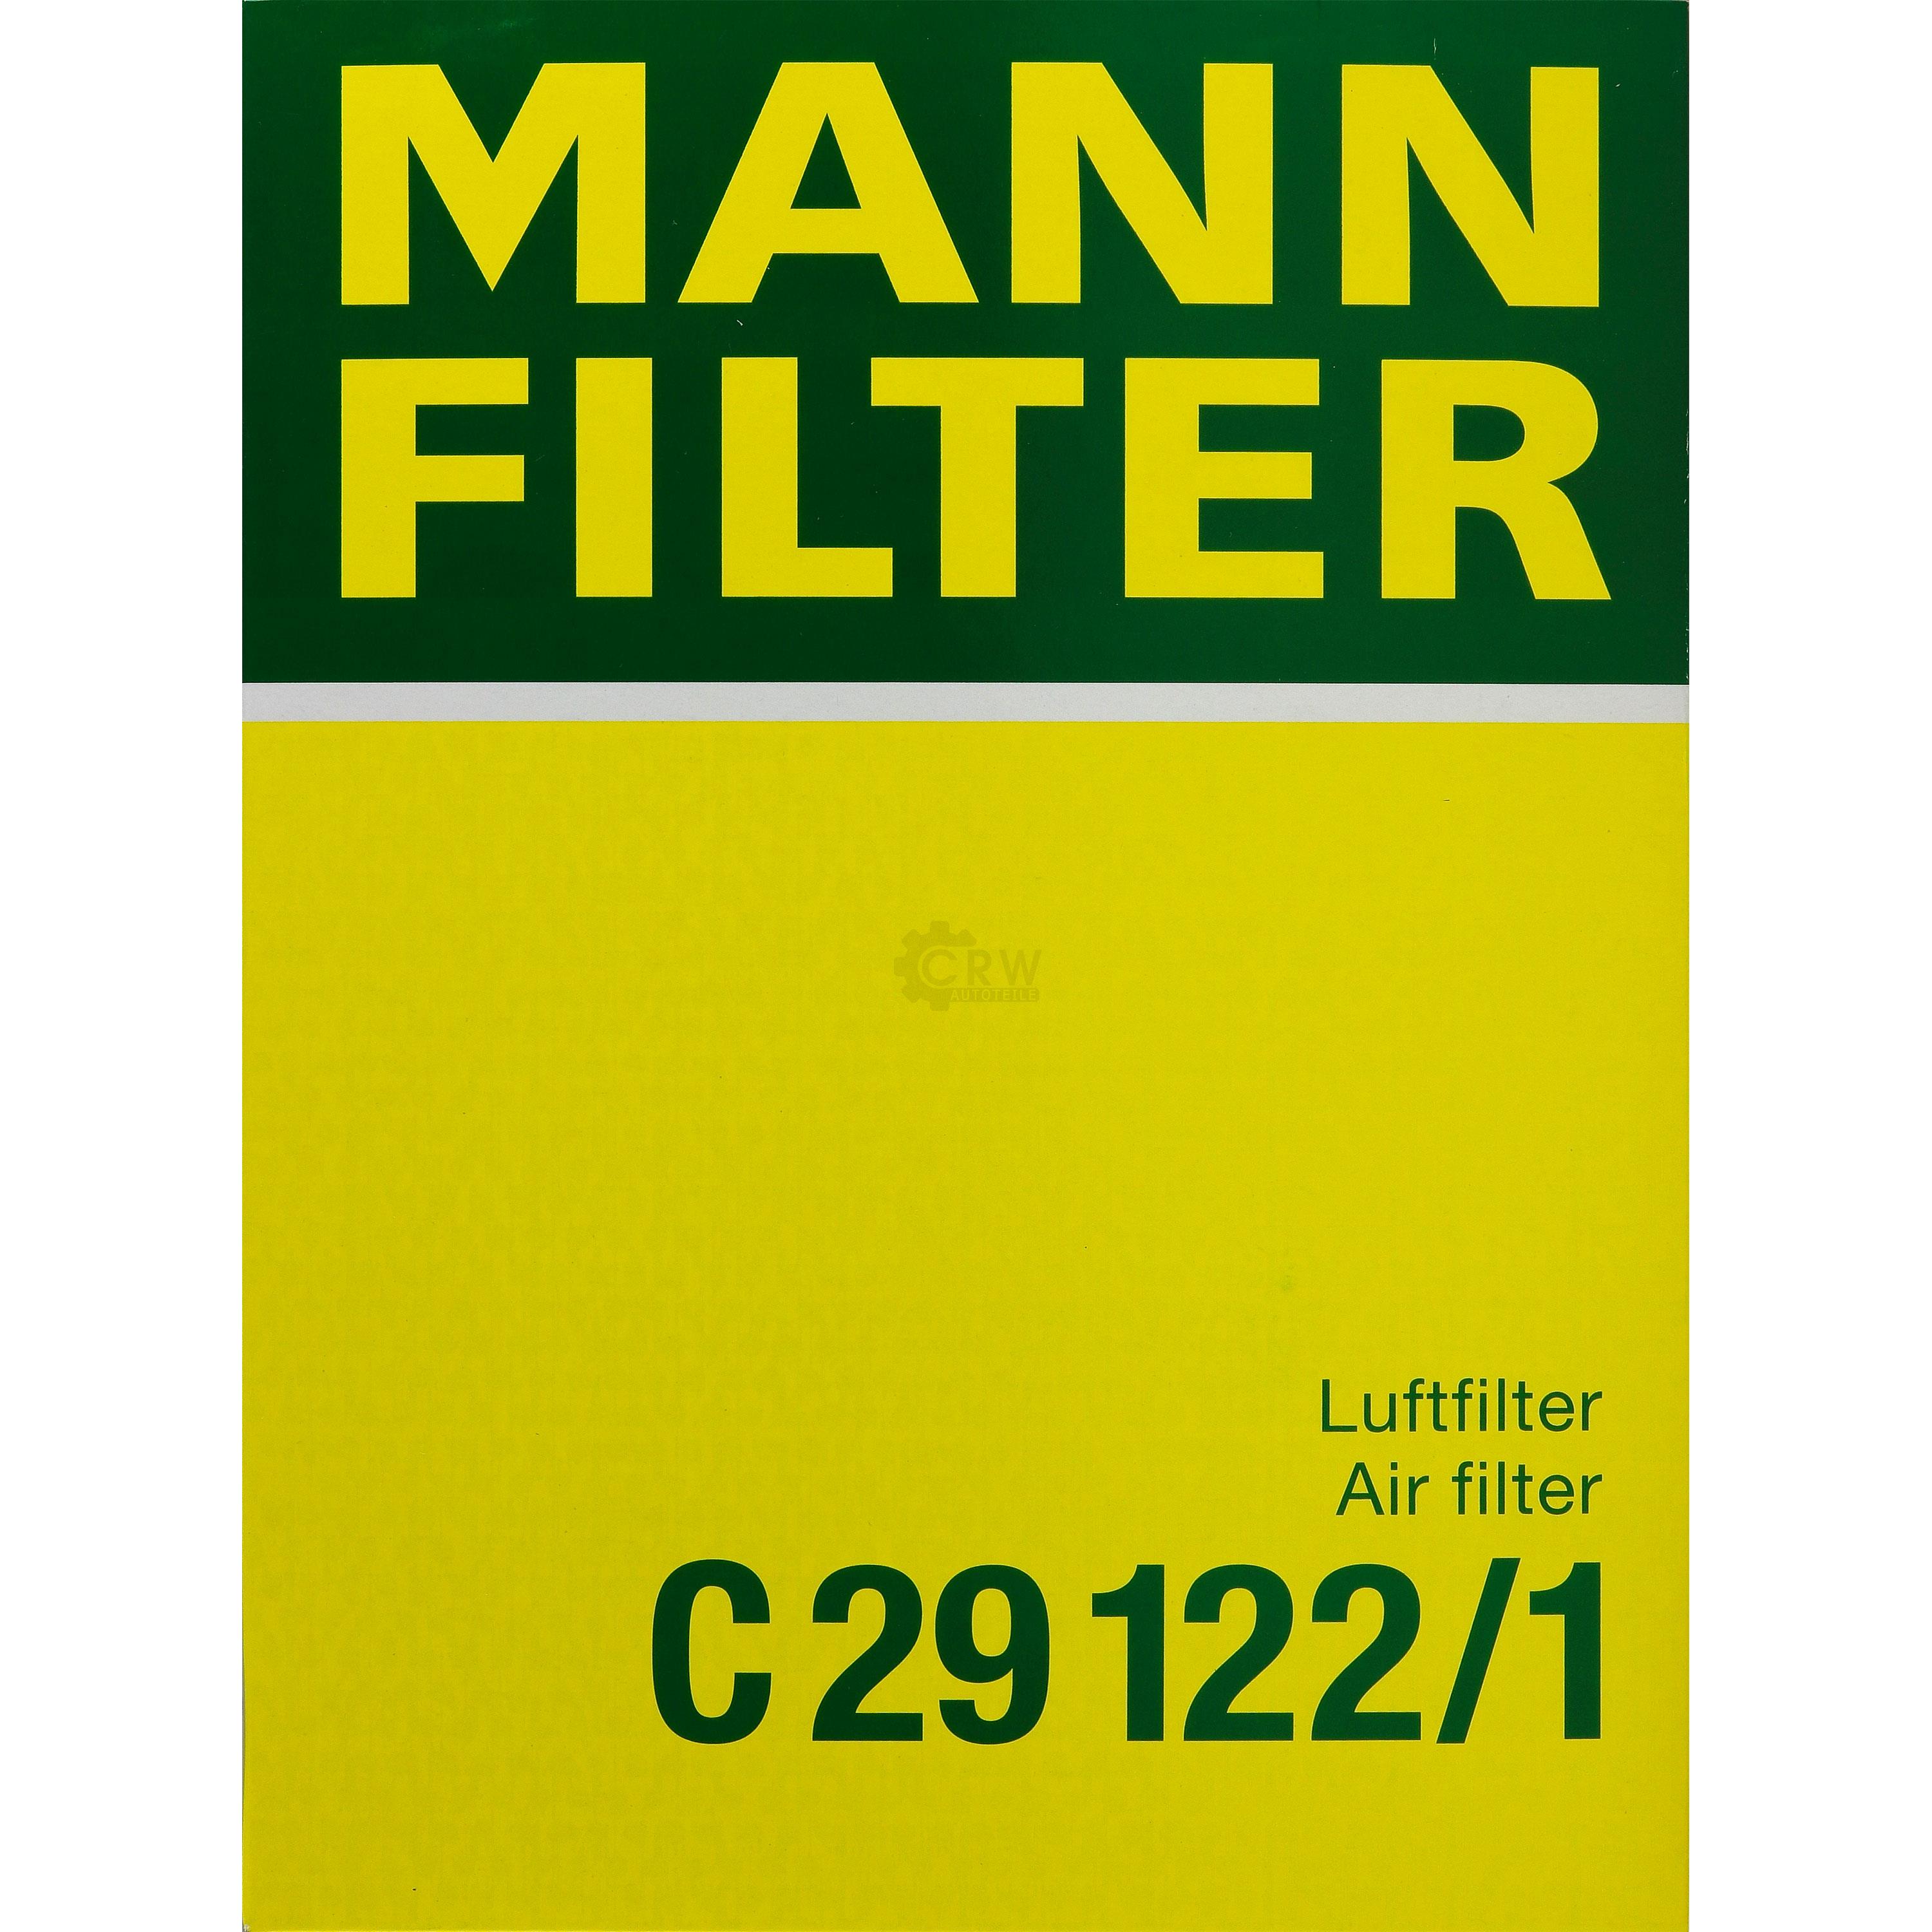 MANN-FILTER Luftfilter für Volvo 960 II Kombi 965 2.9 2.5 940 944 2.3 2.0 744